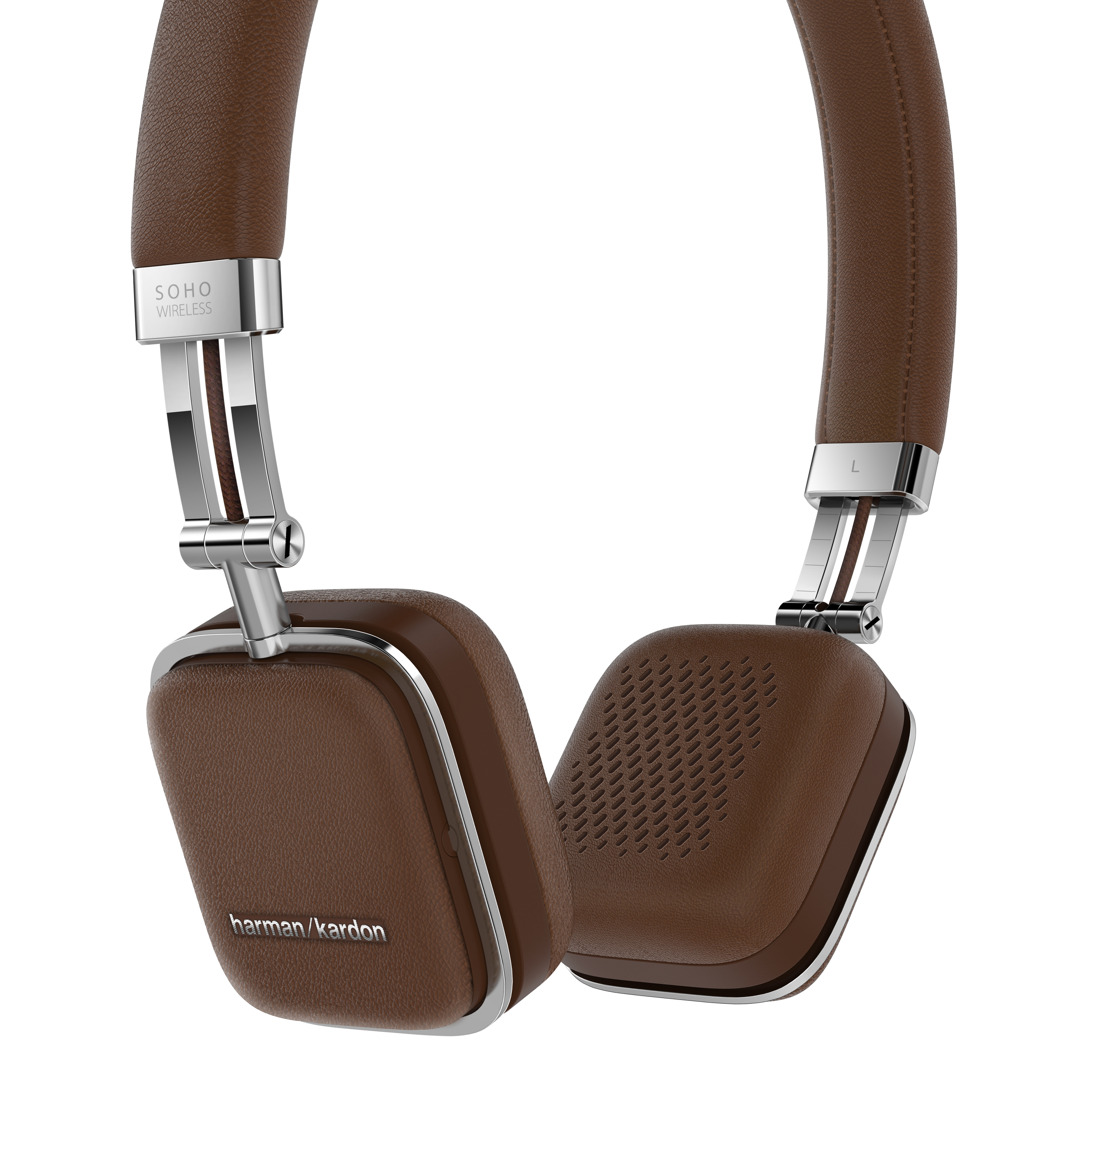 HARMAN launches Harman Kardon Soho Wireless Headphones at IFA 2014